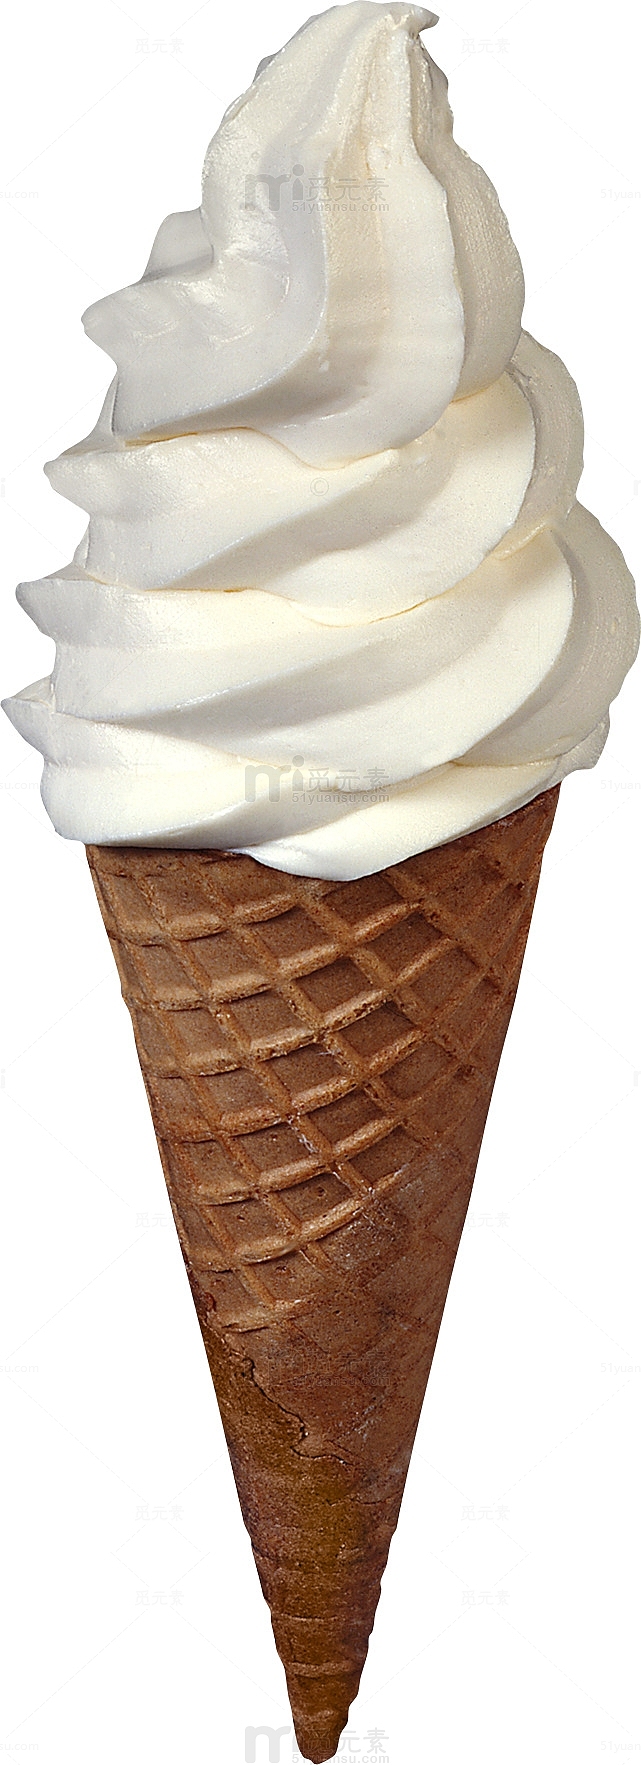 冰淇淋脆皮甜筒